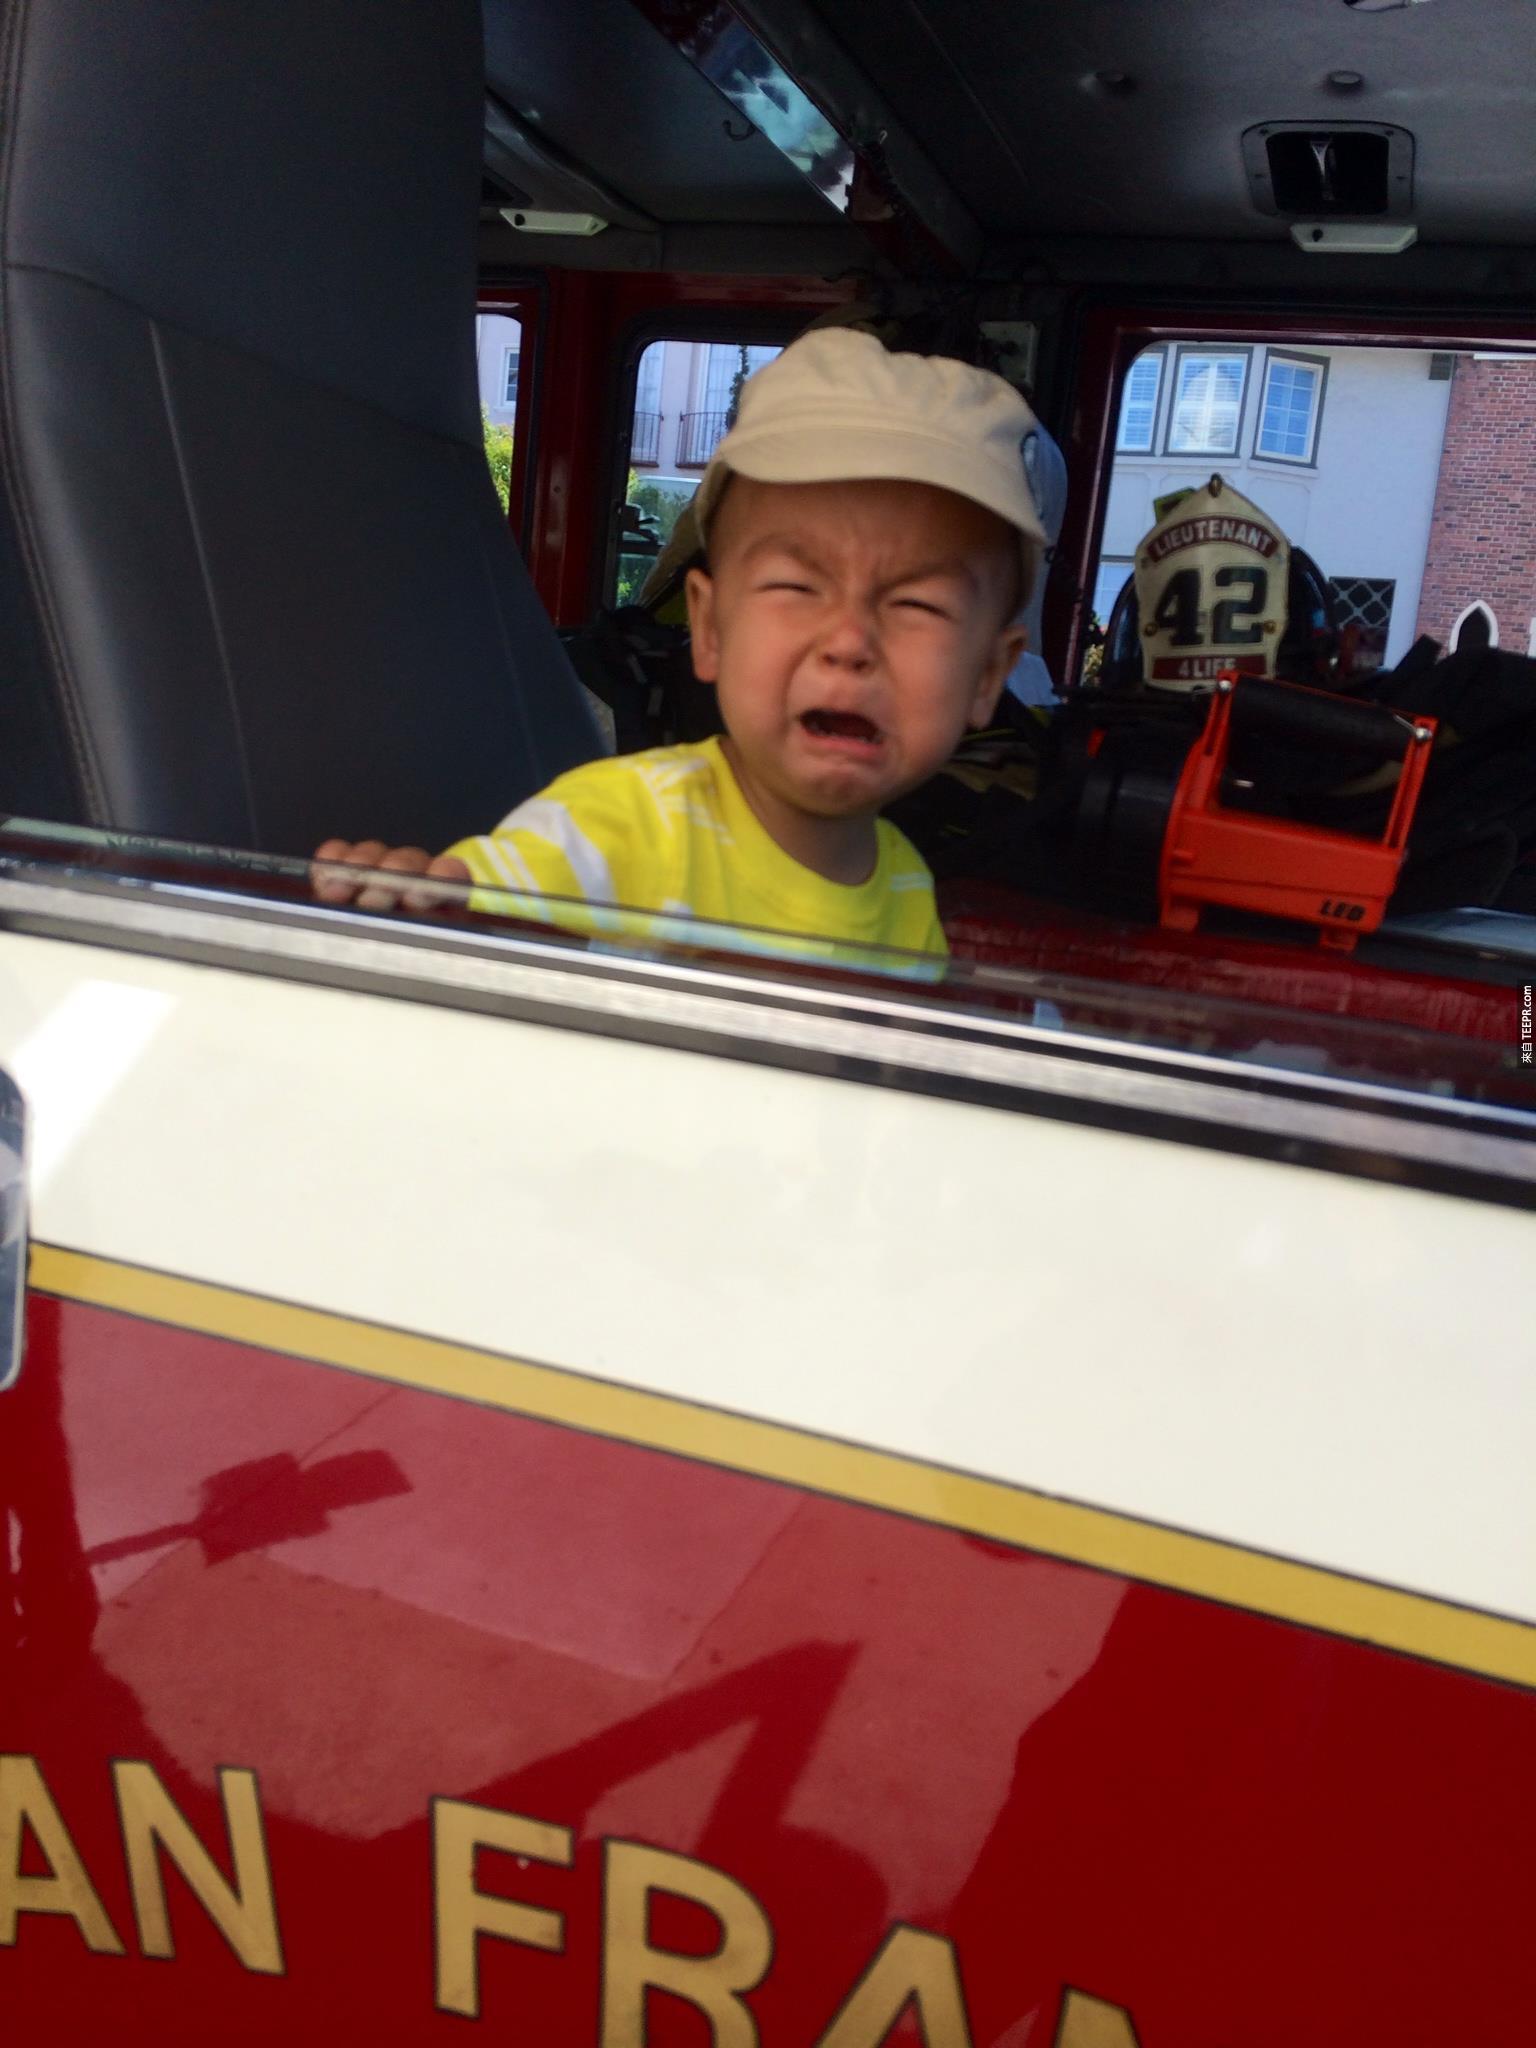  “我们让他坐在一个真的消防车里面。” -Annie